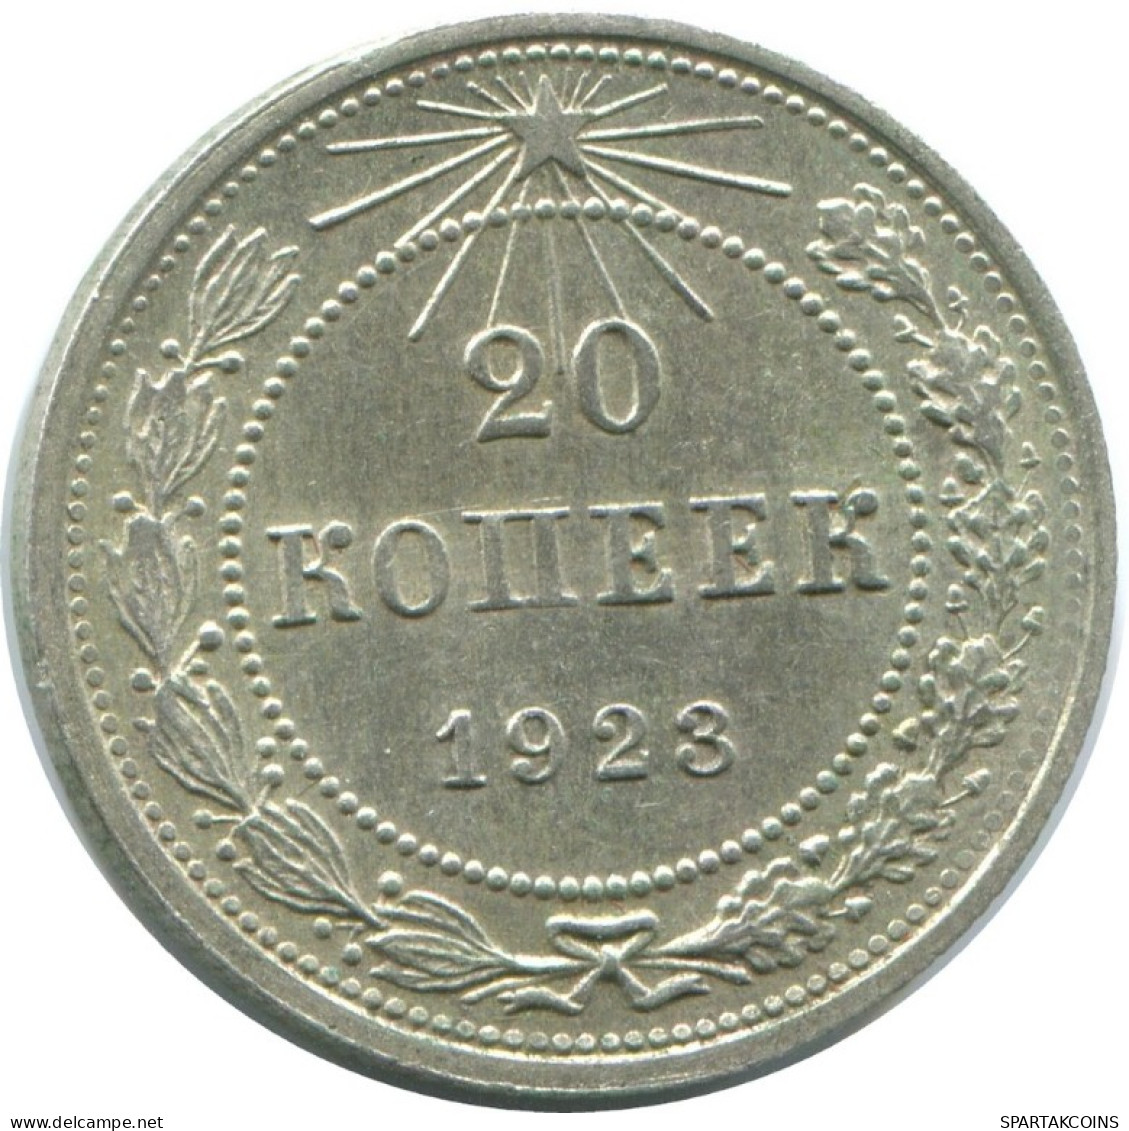 20 KOPEKS 1923 RUSSIA RSFSR SILVER Coin HIGH GRADE #AF641.U.A - Russland